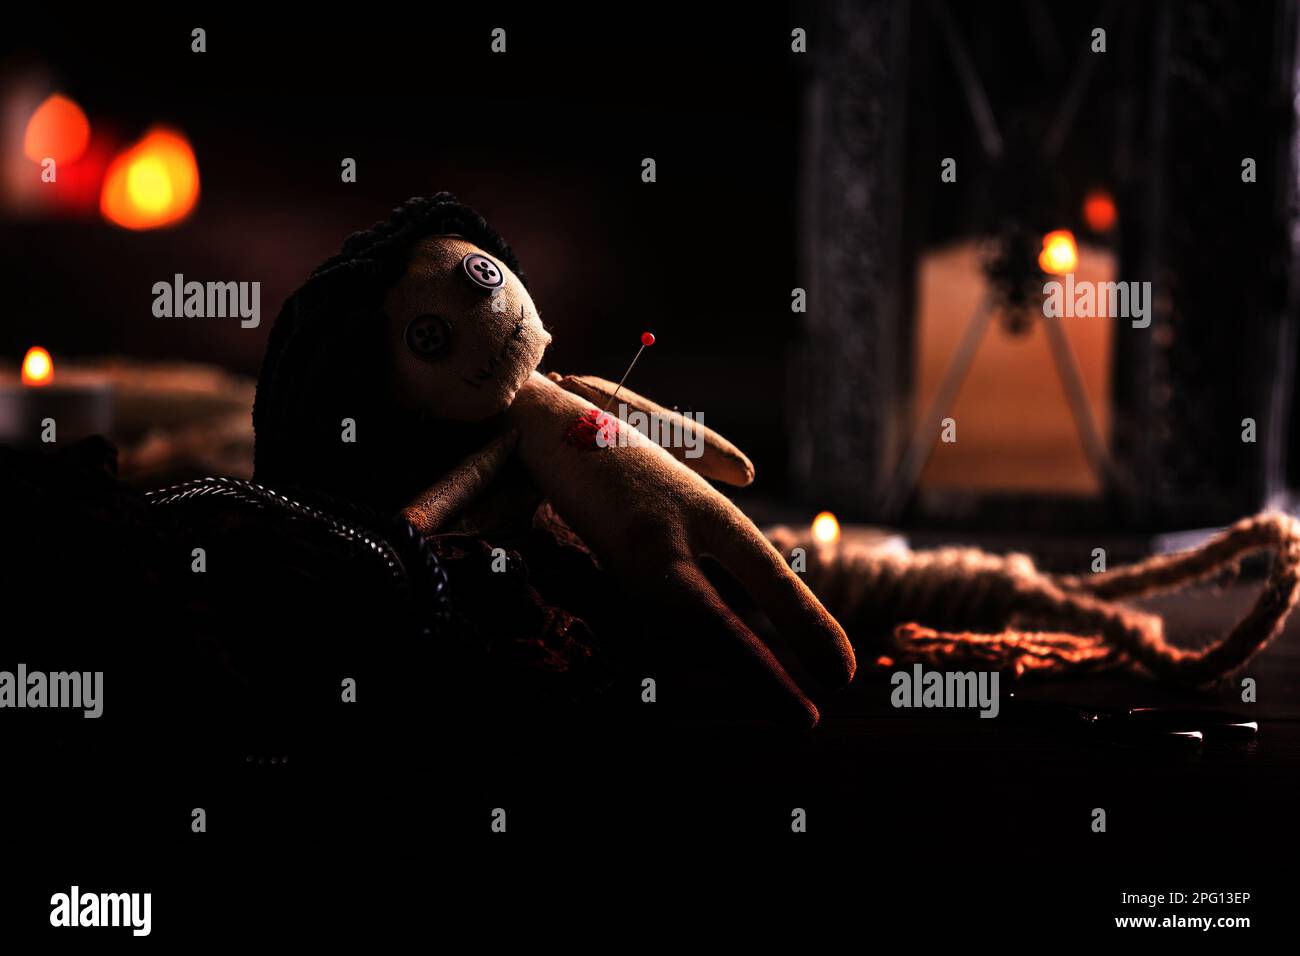 Weibliche Voodoo-Puppe mit Herznadel und zeremoniellen Gegenständen auf dem Tisch Stockfoto